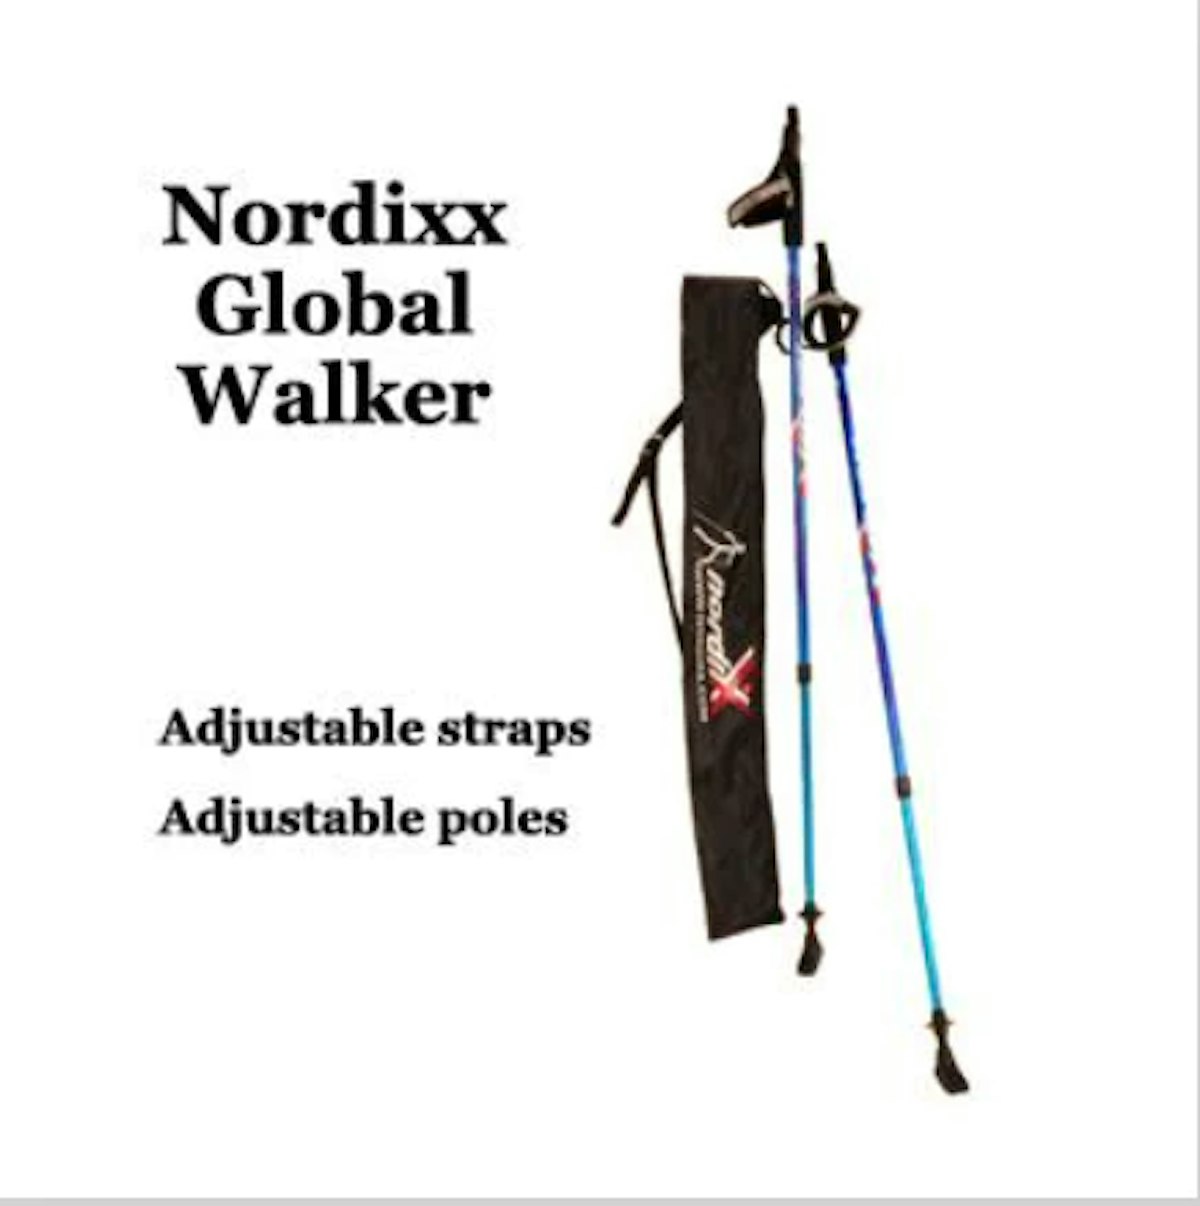 Nordix global walker adjustable straps and poles.